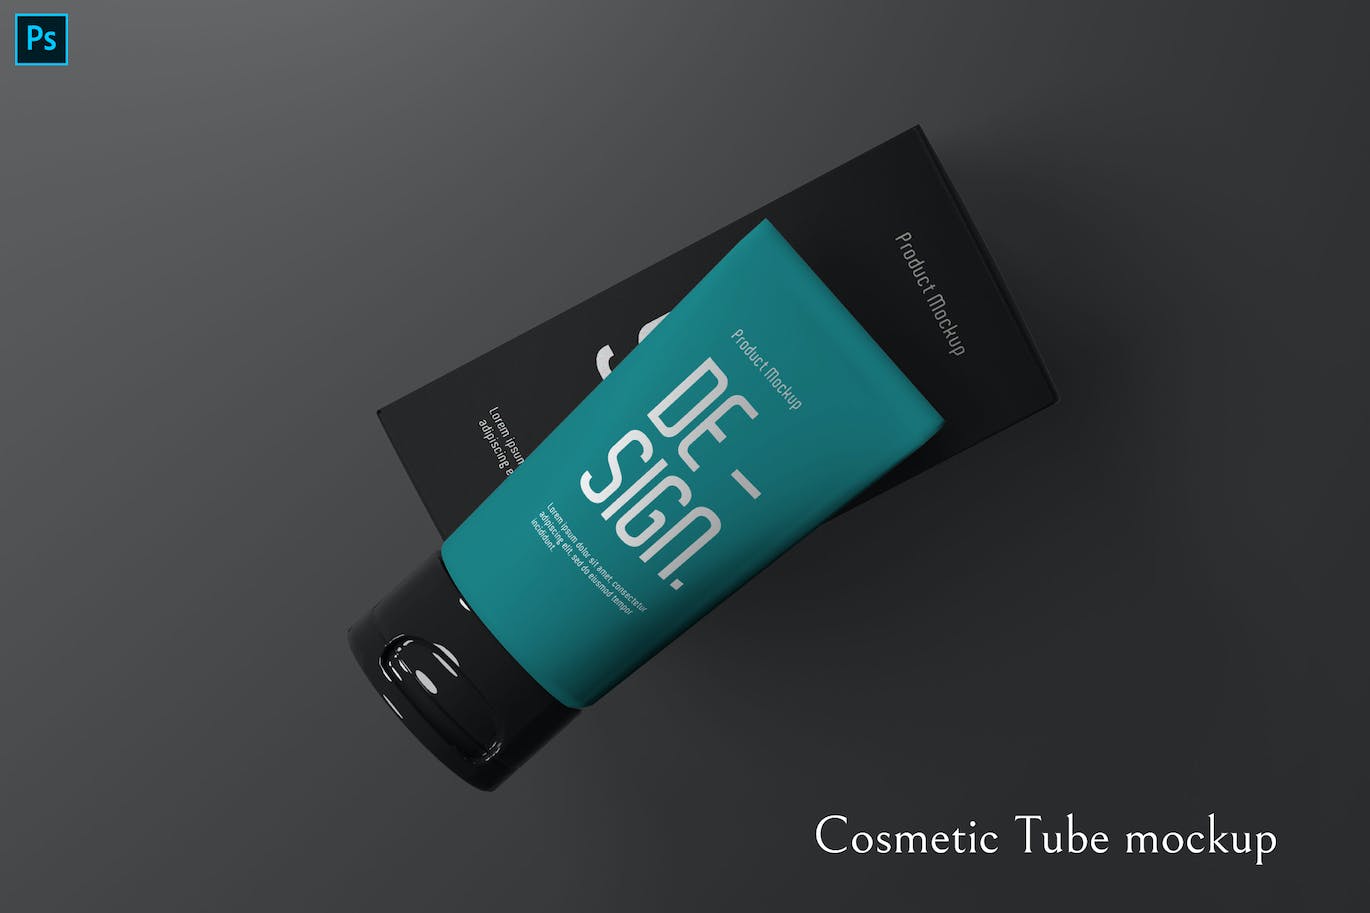 化妆品软管包装品牌展示样机 Cosmetic Tube mockup 样机素材 第1张